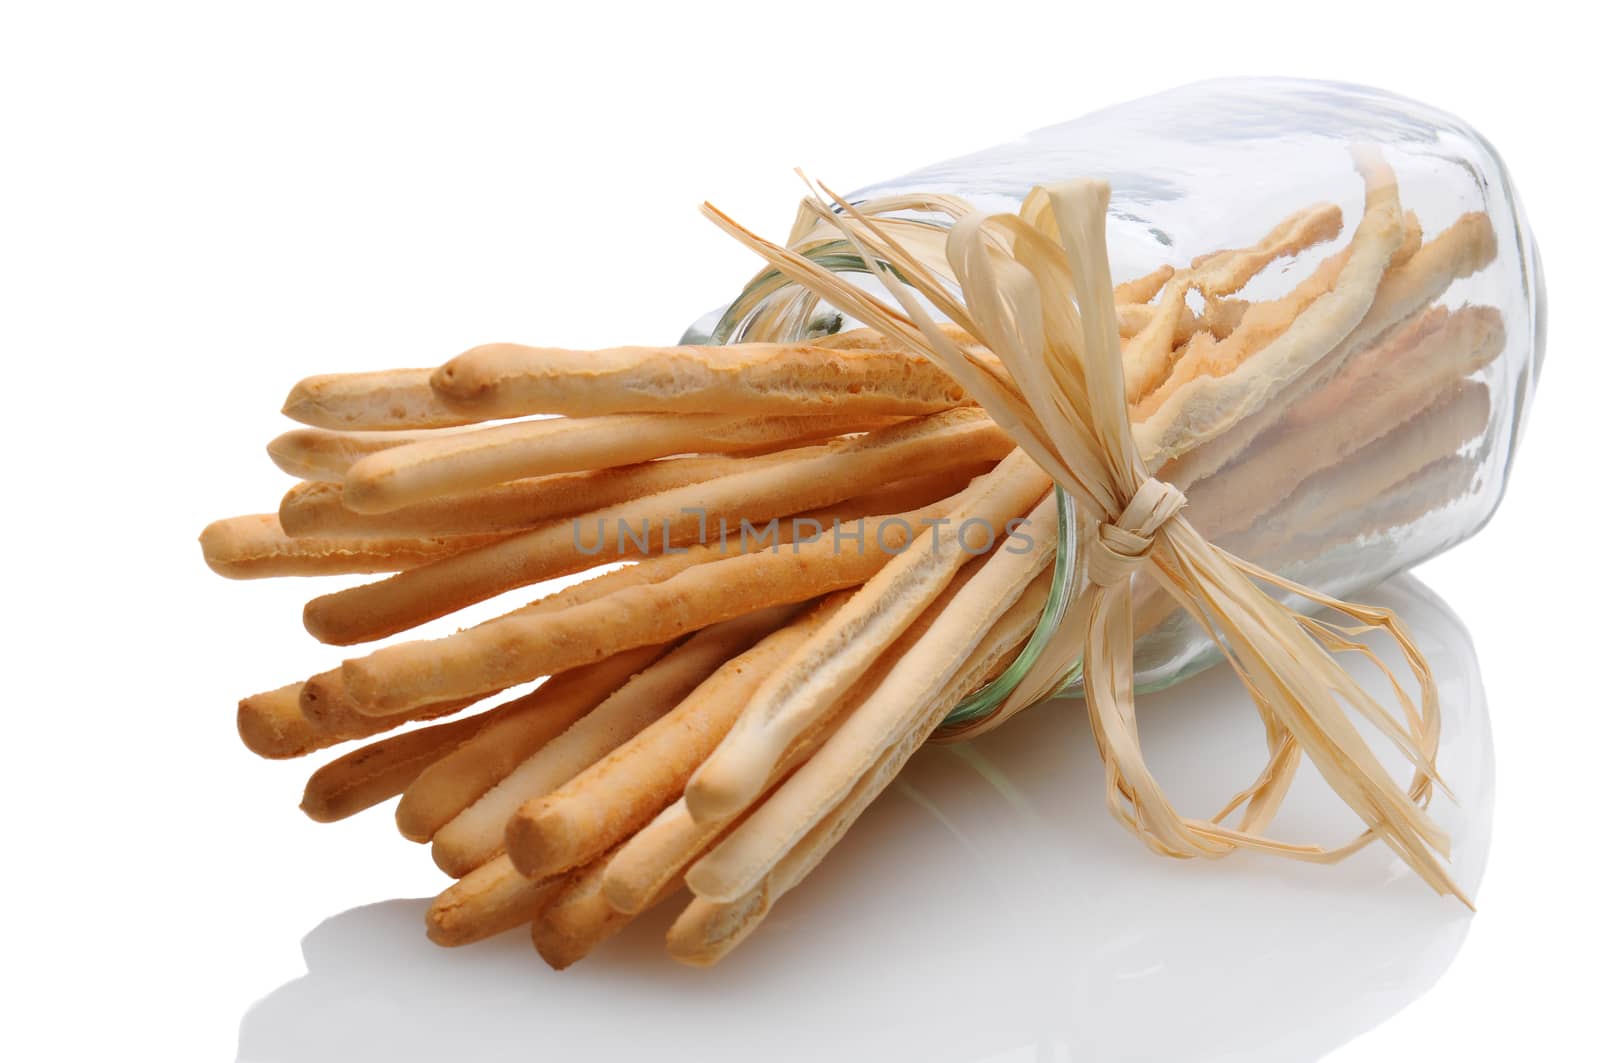 Breadsticks in Jar on its Side Tied with Raffia by sCukrov